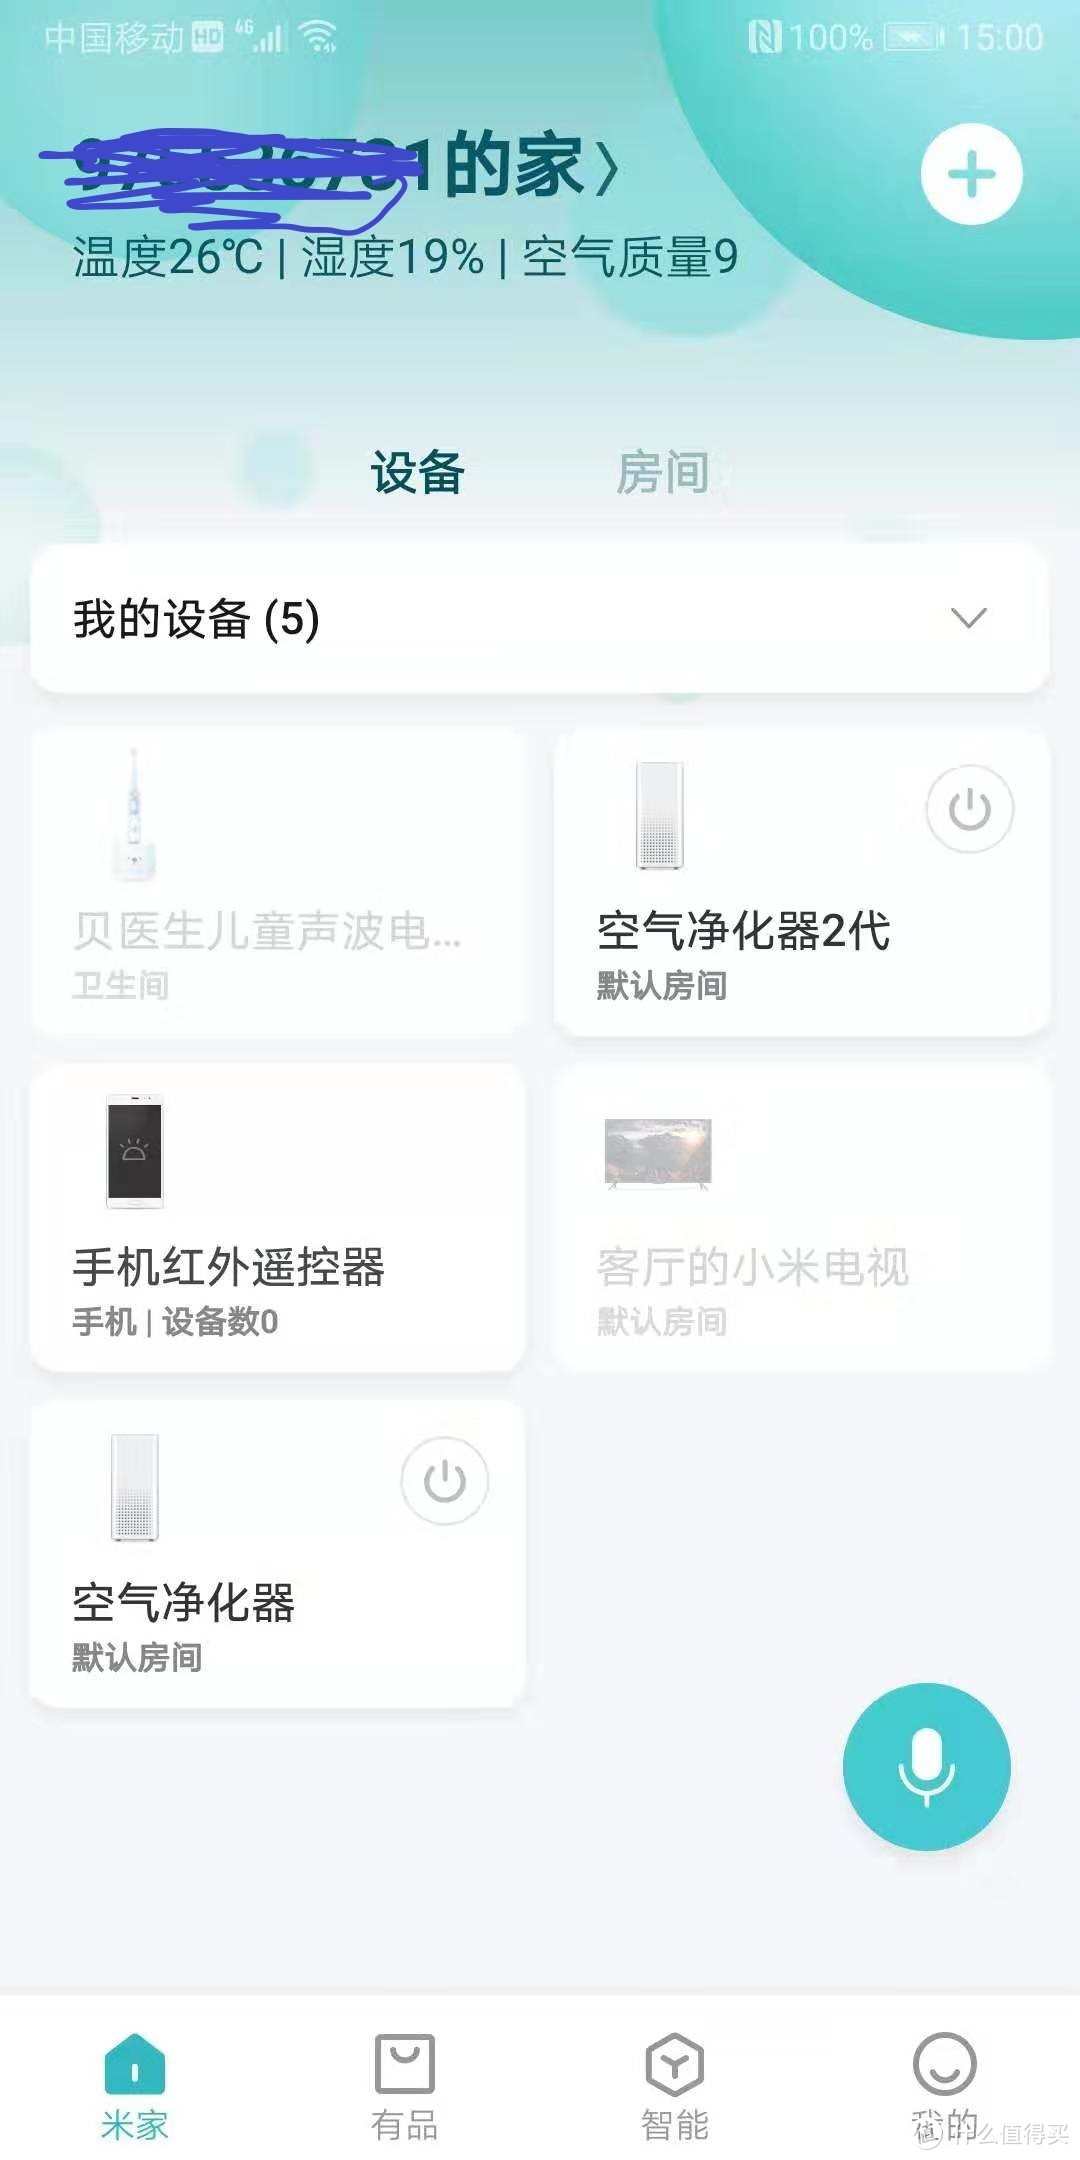 在米家app的设备列表里了，相信有小米生态产品的值友们对这个应该不陌生。